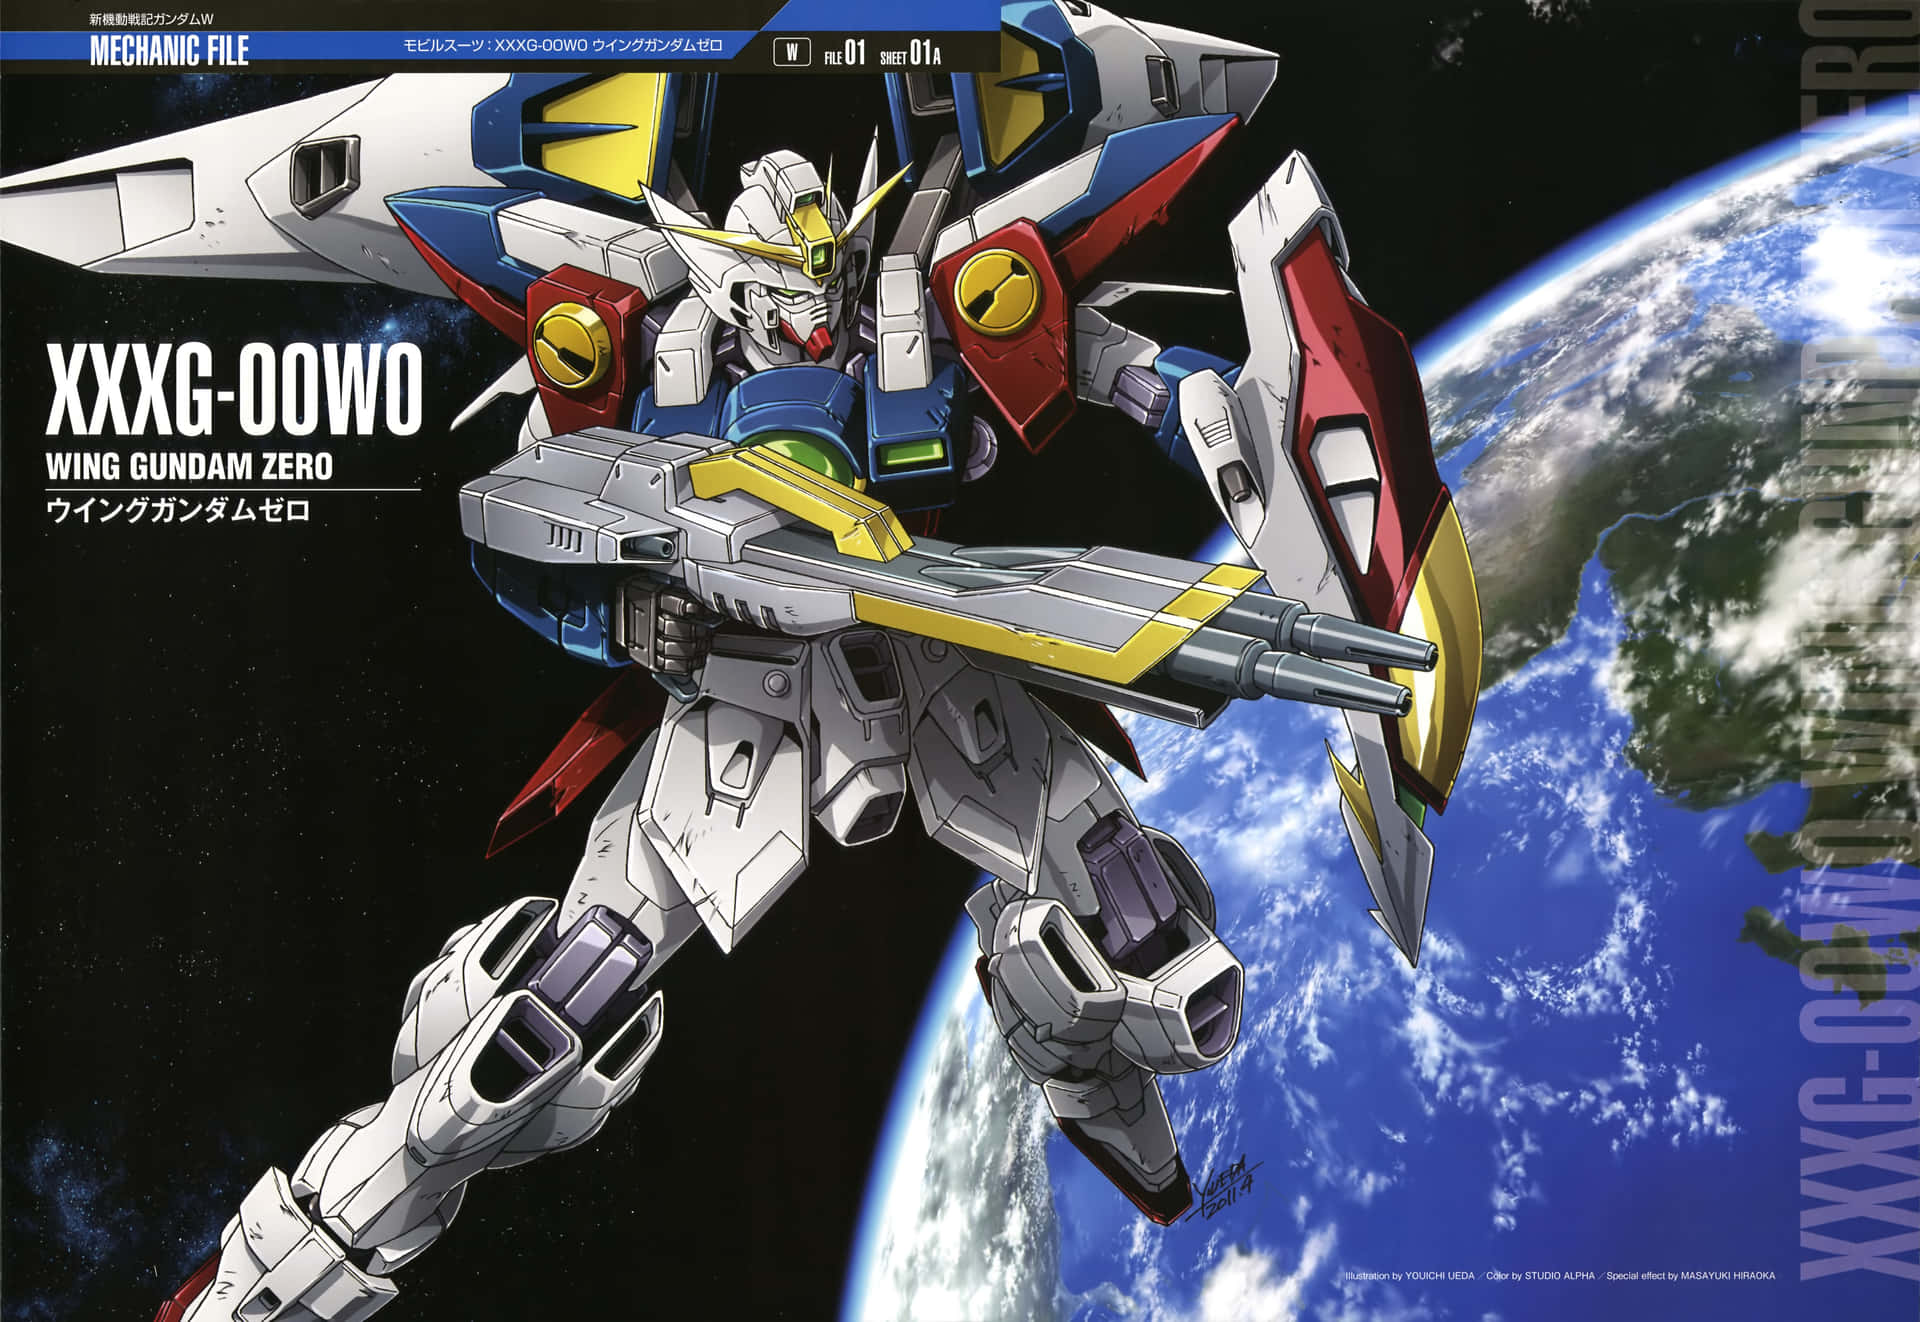 Enkraftfull Mobile Suit-pilot Strider I Den Populära Animeserien Gundam Wing. Wallpaper